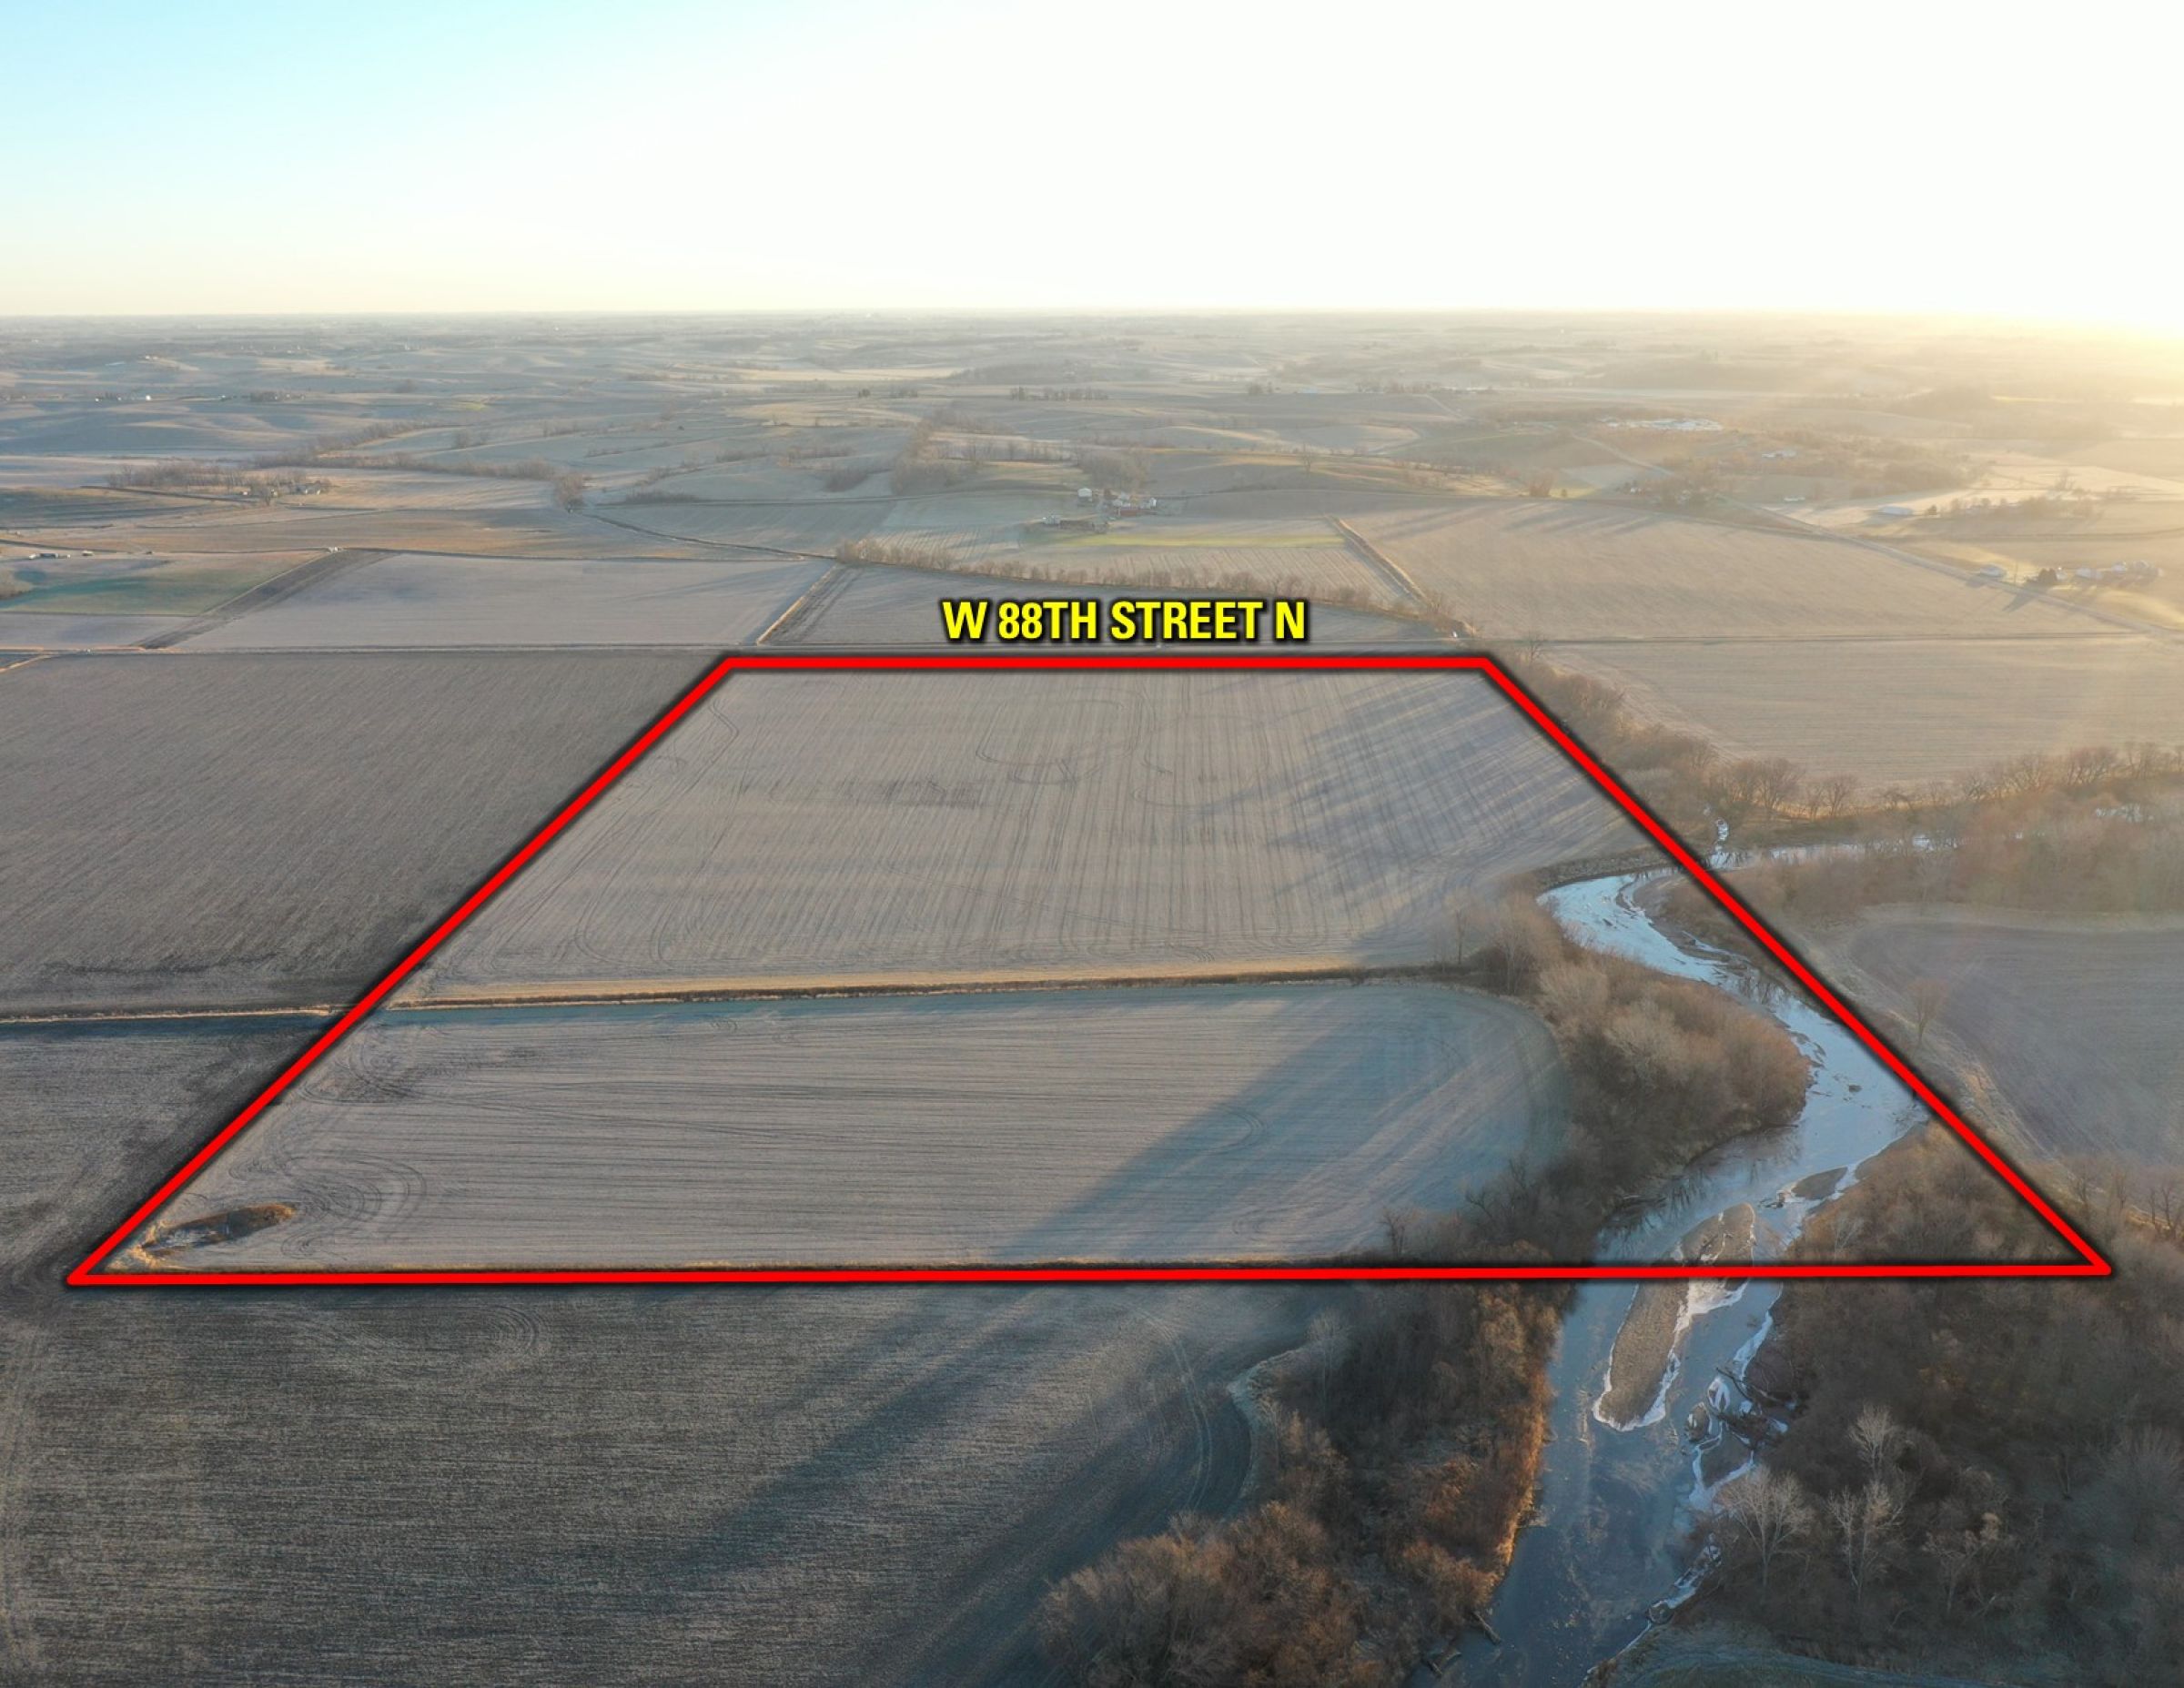 Jasper County Iowa Farm Land For Sale